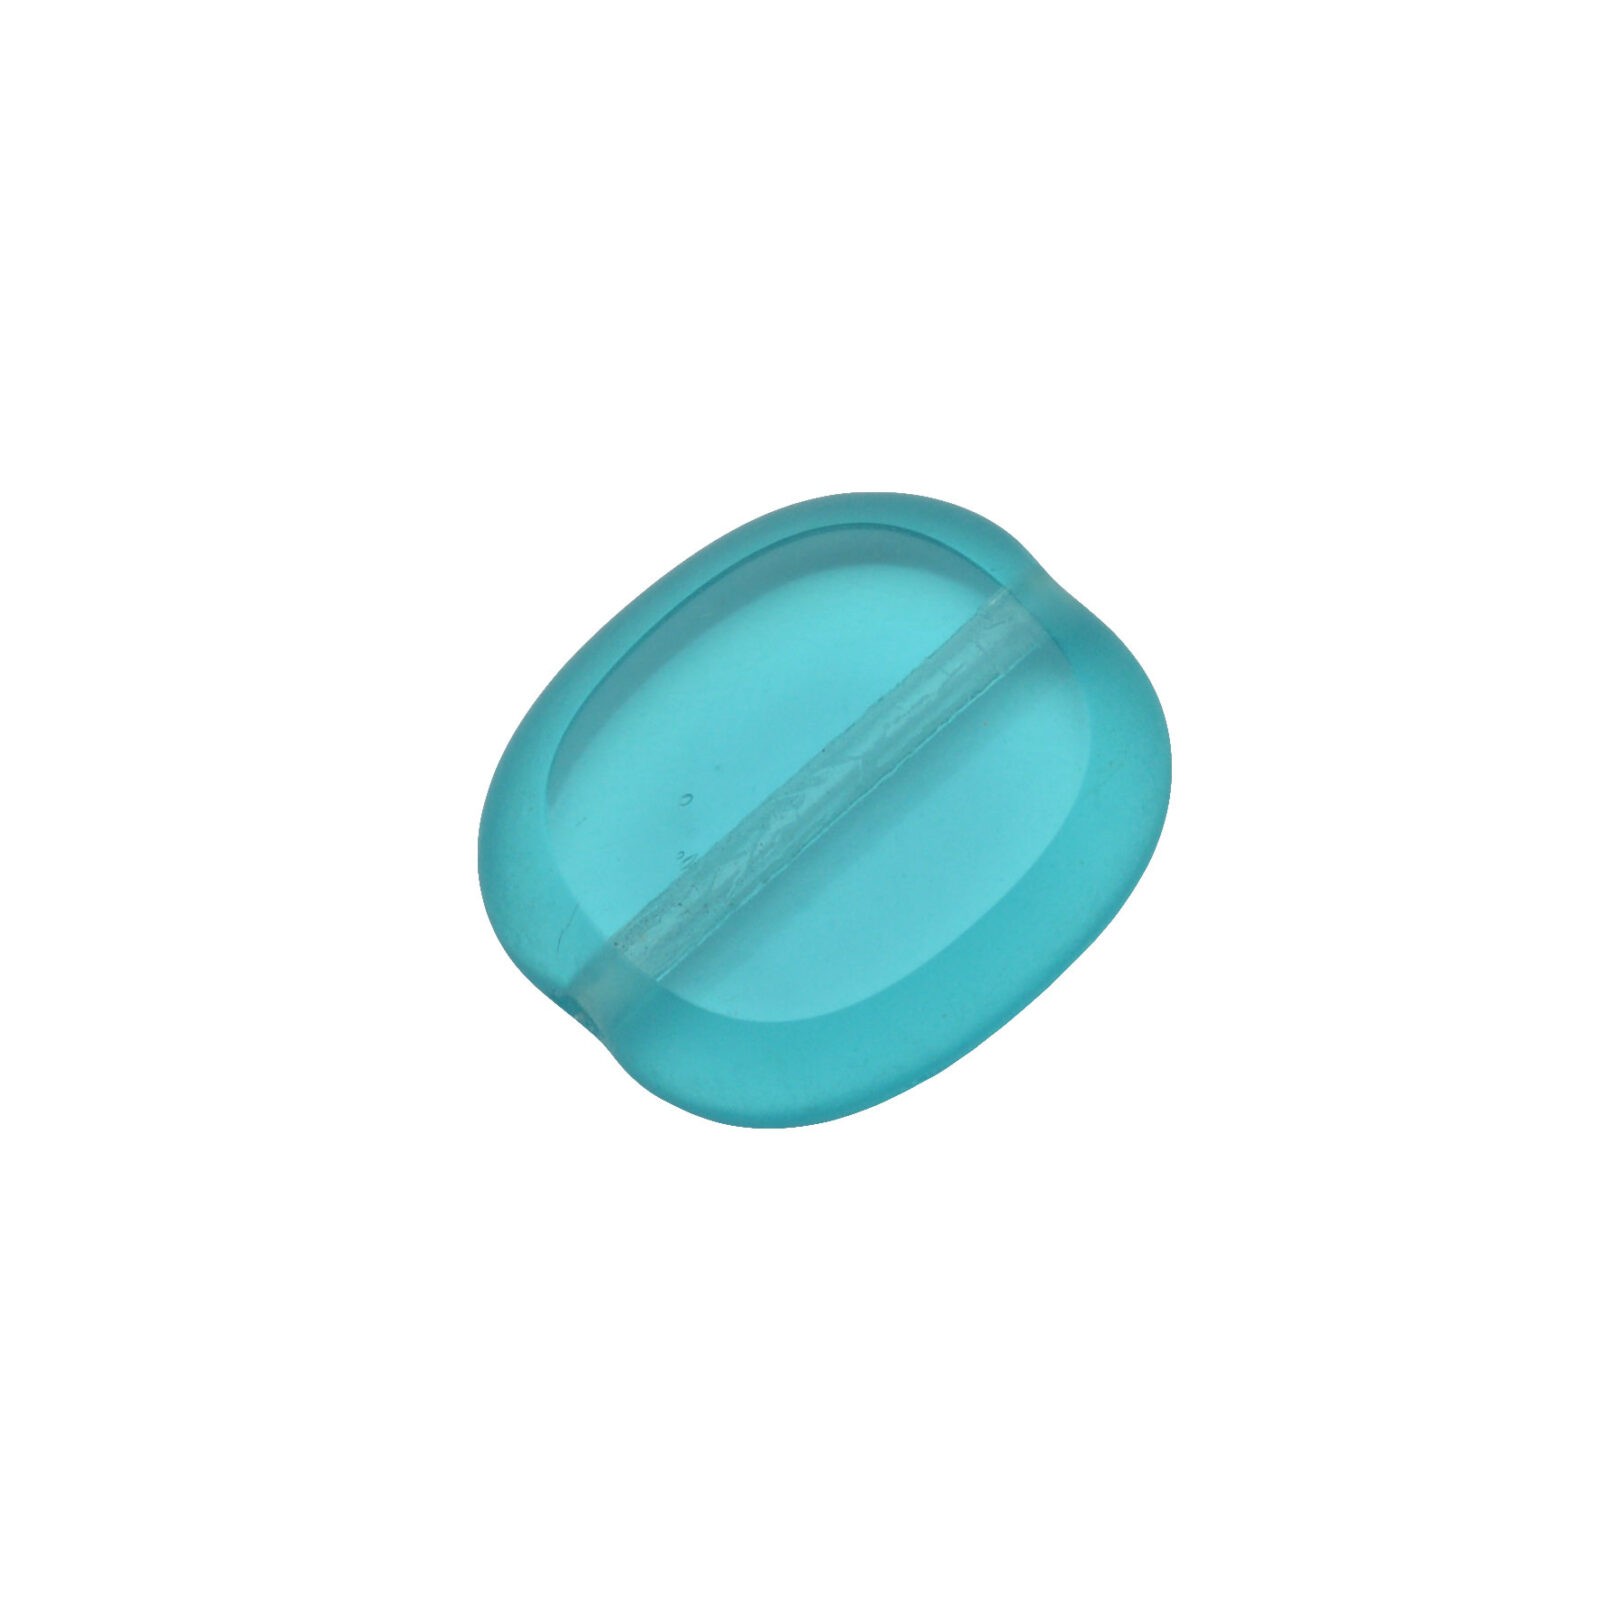 Turquoise ovale glaskraal